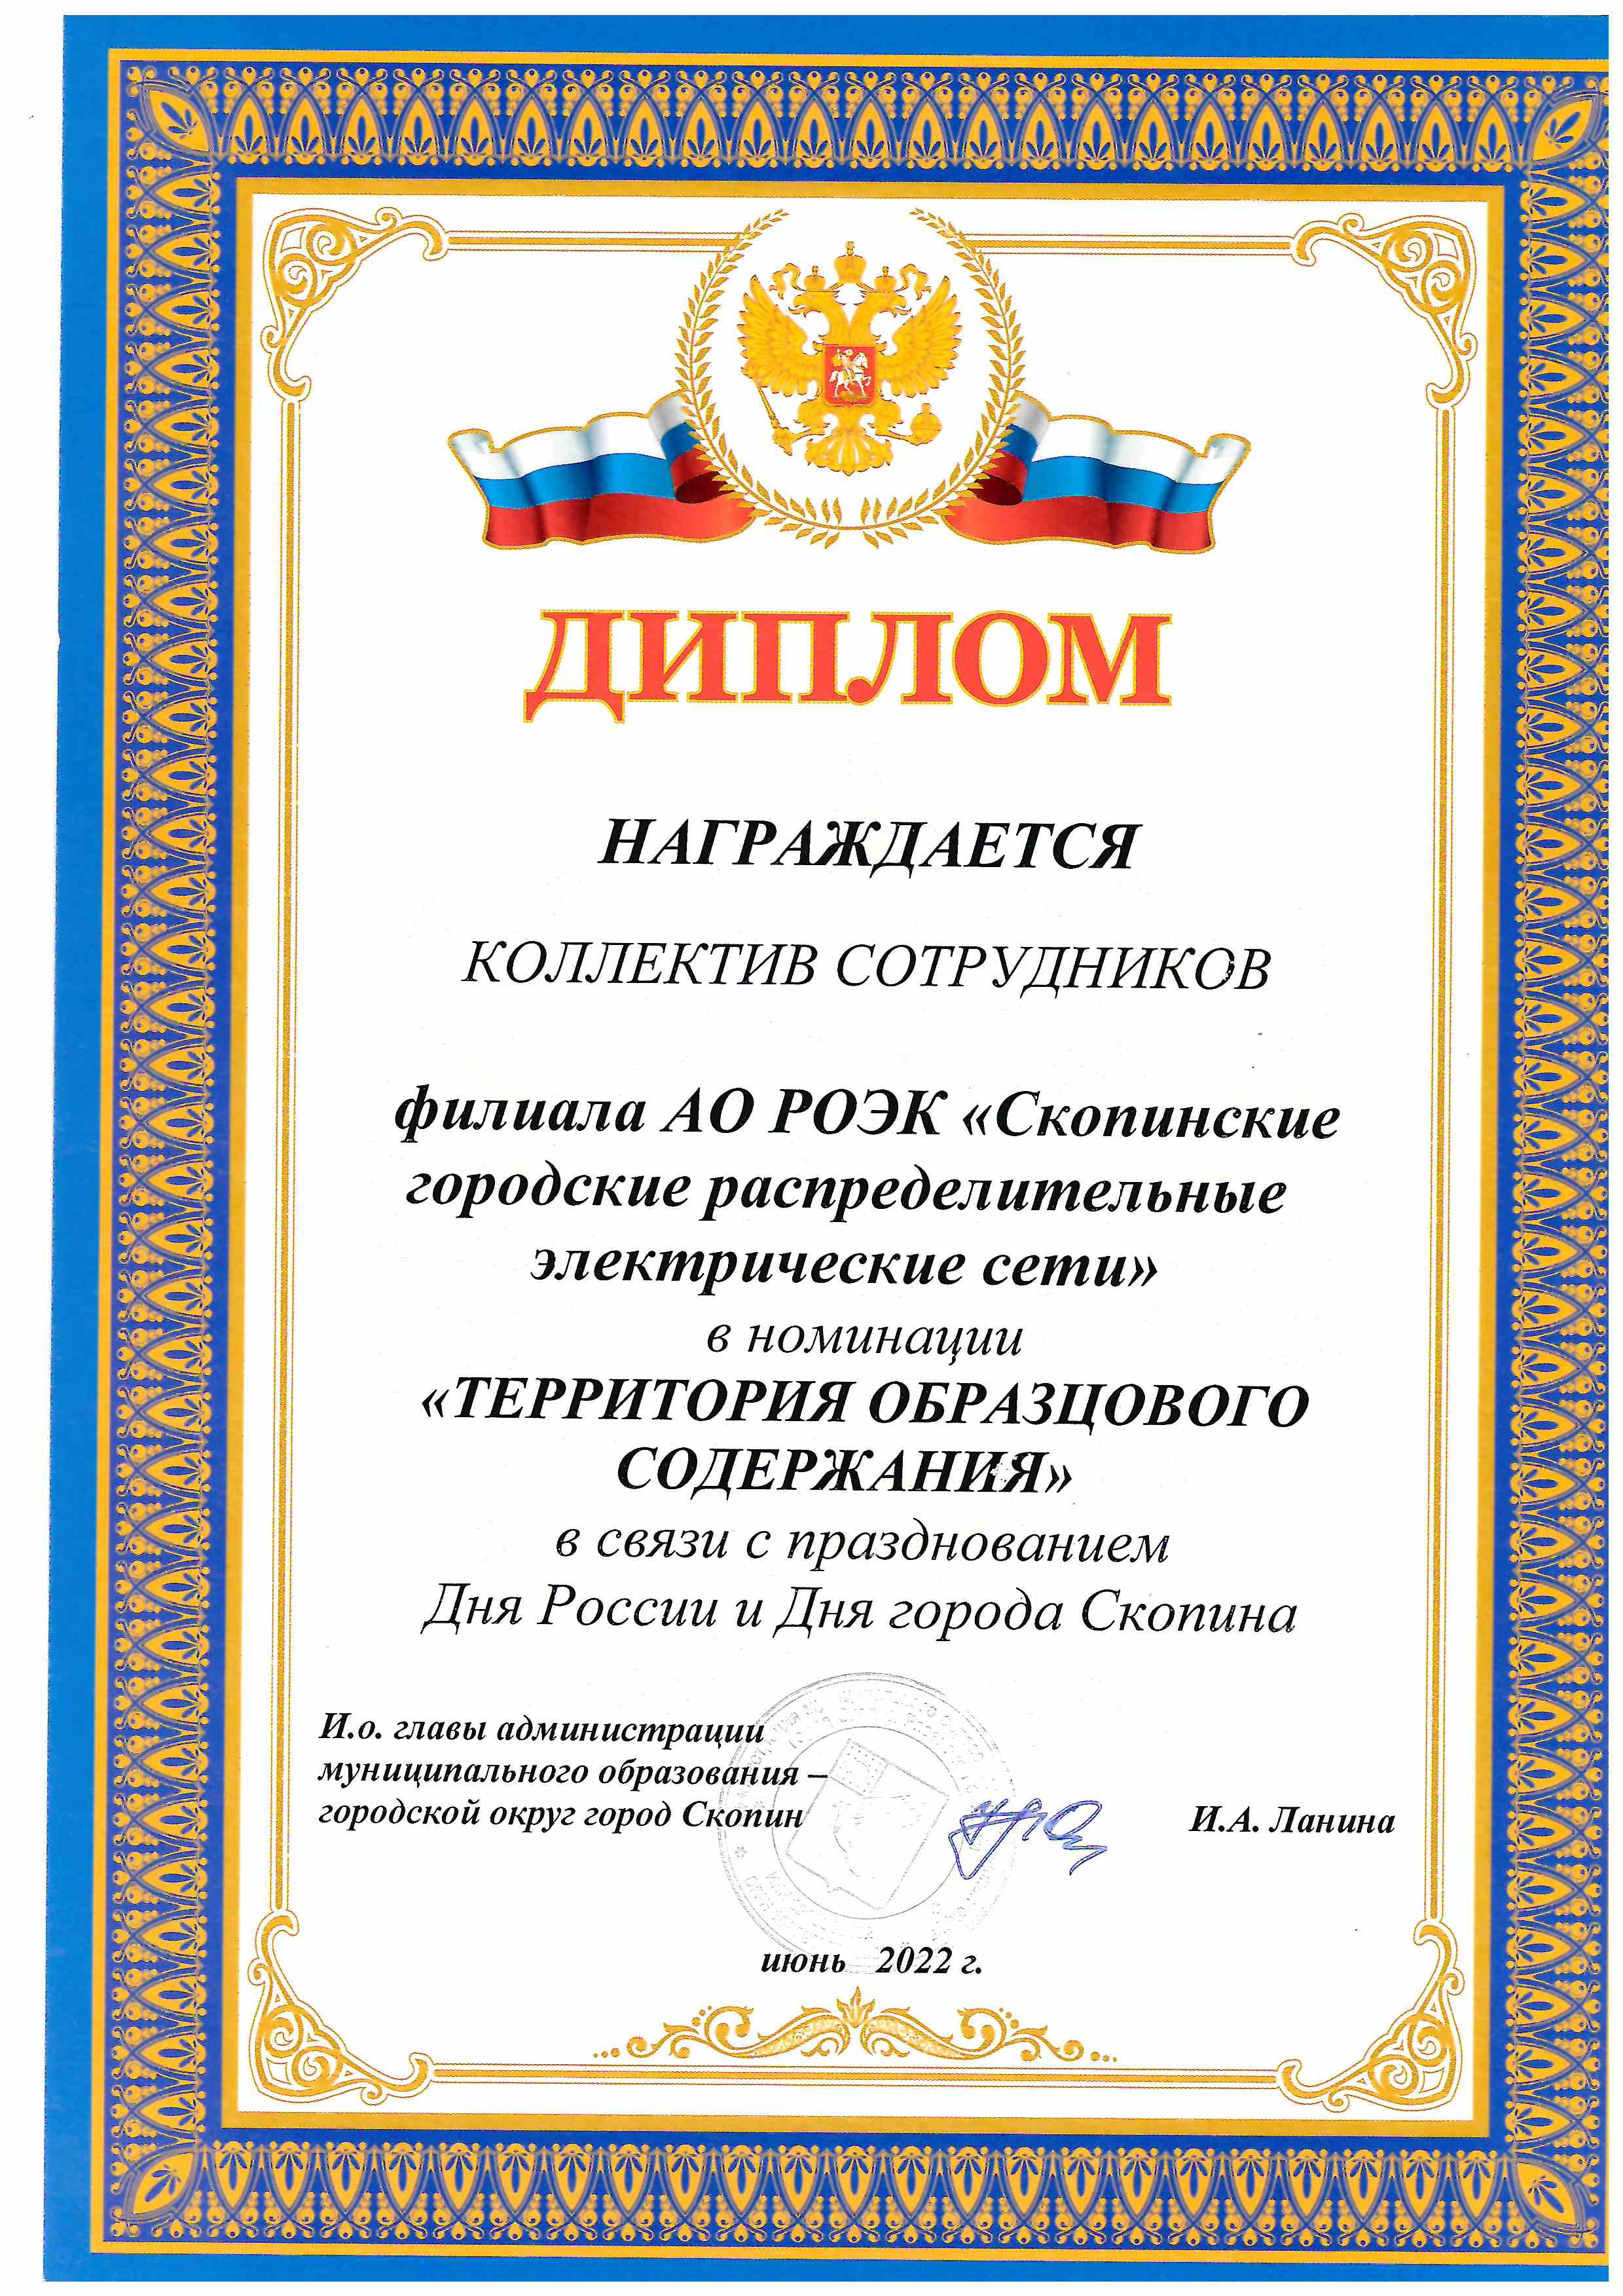 Диплом о награждении сотрудников АО "РОЭК"